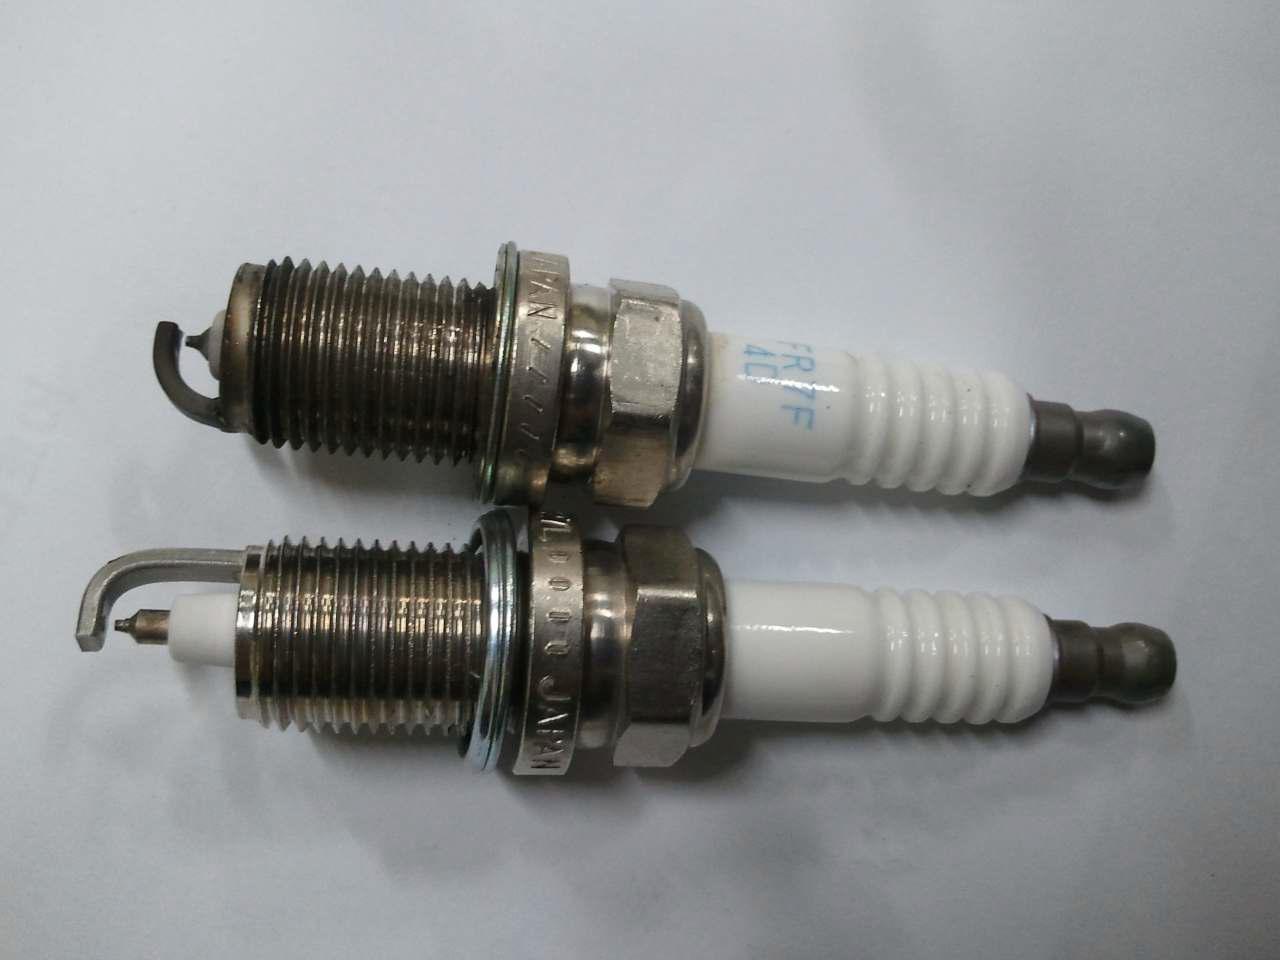 기존의 Spark plug(上)와 New type spark plug(下)의 형상